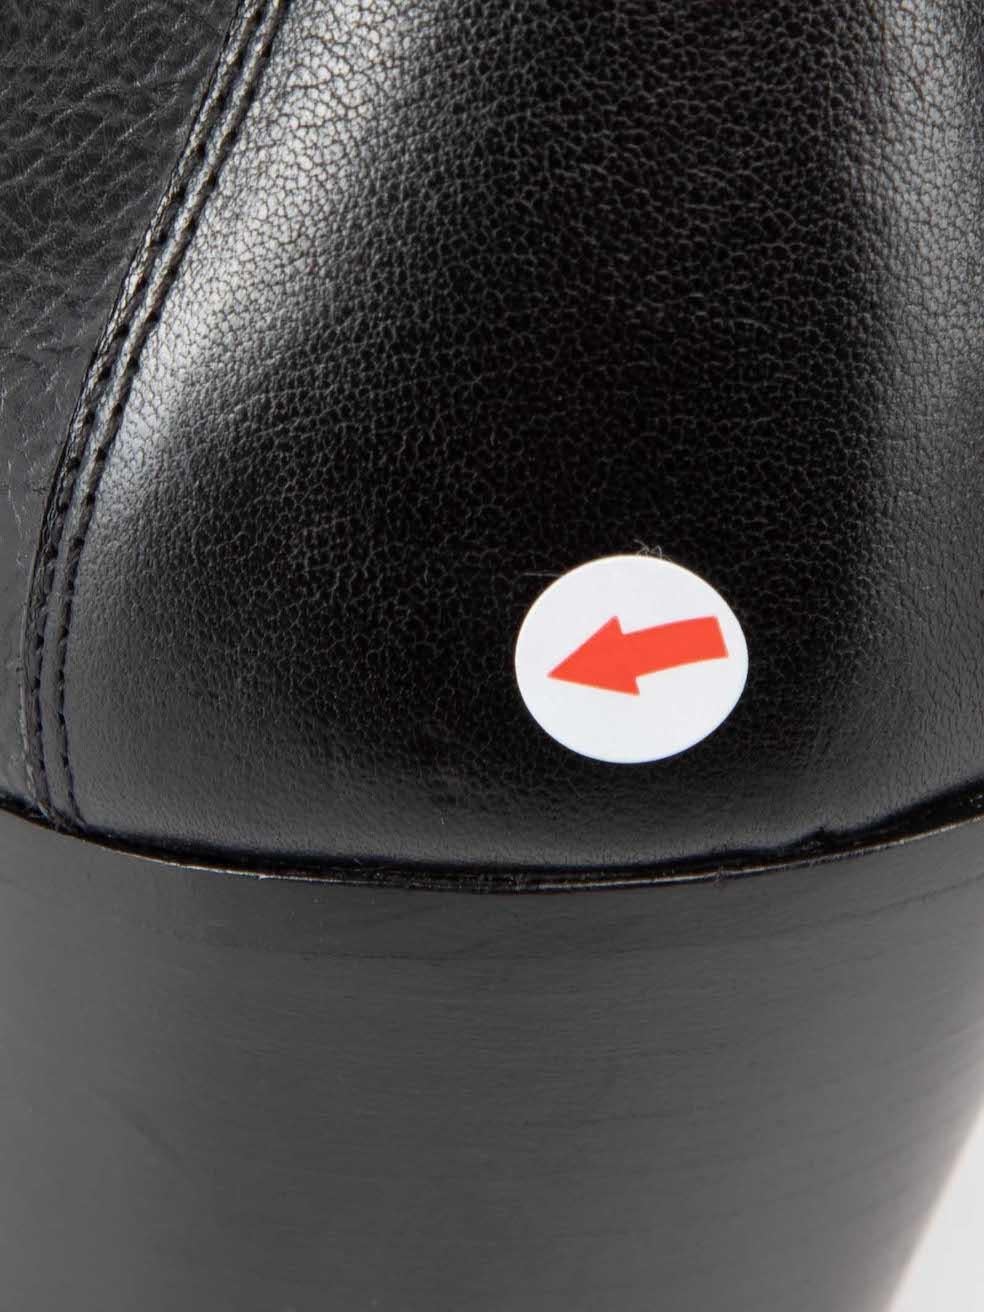 Saint Laurent Black Leather Susan Ankle Boots Size IT 37.5 For Sale 2